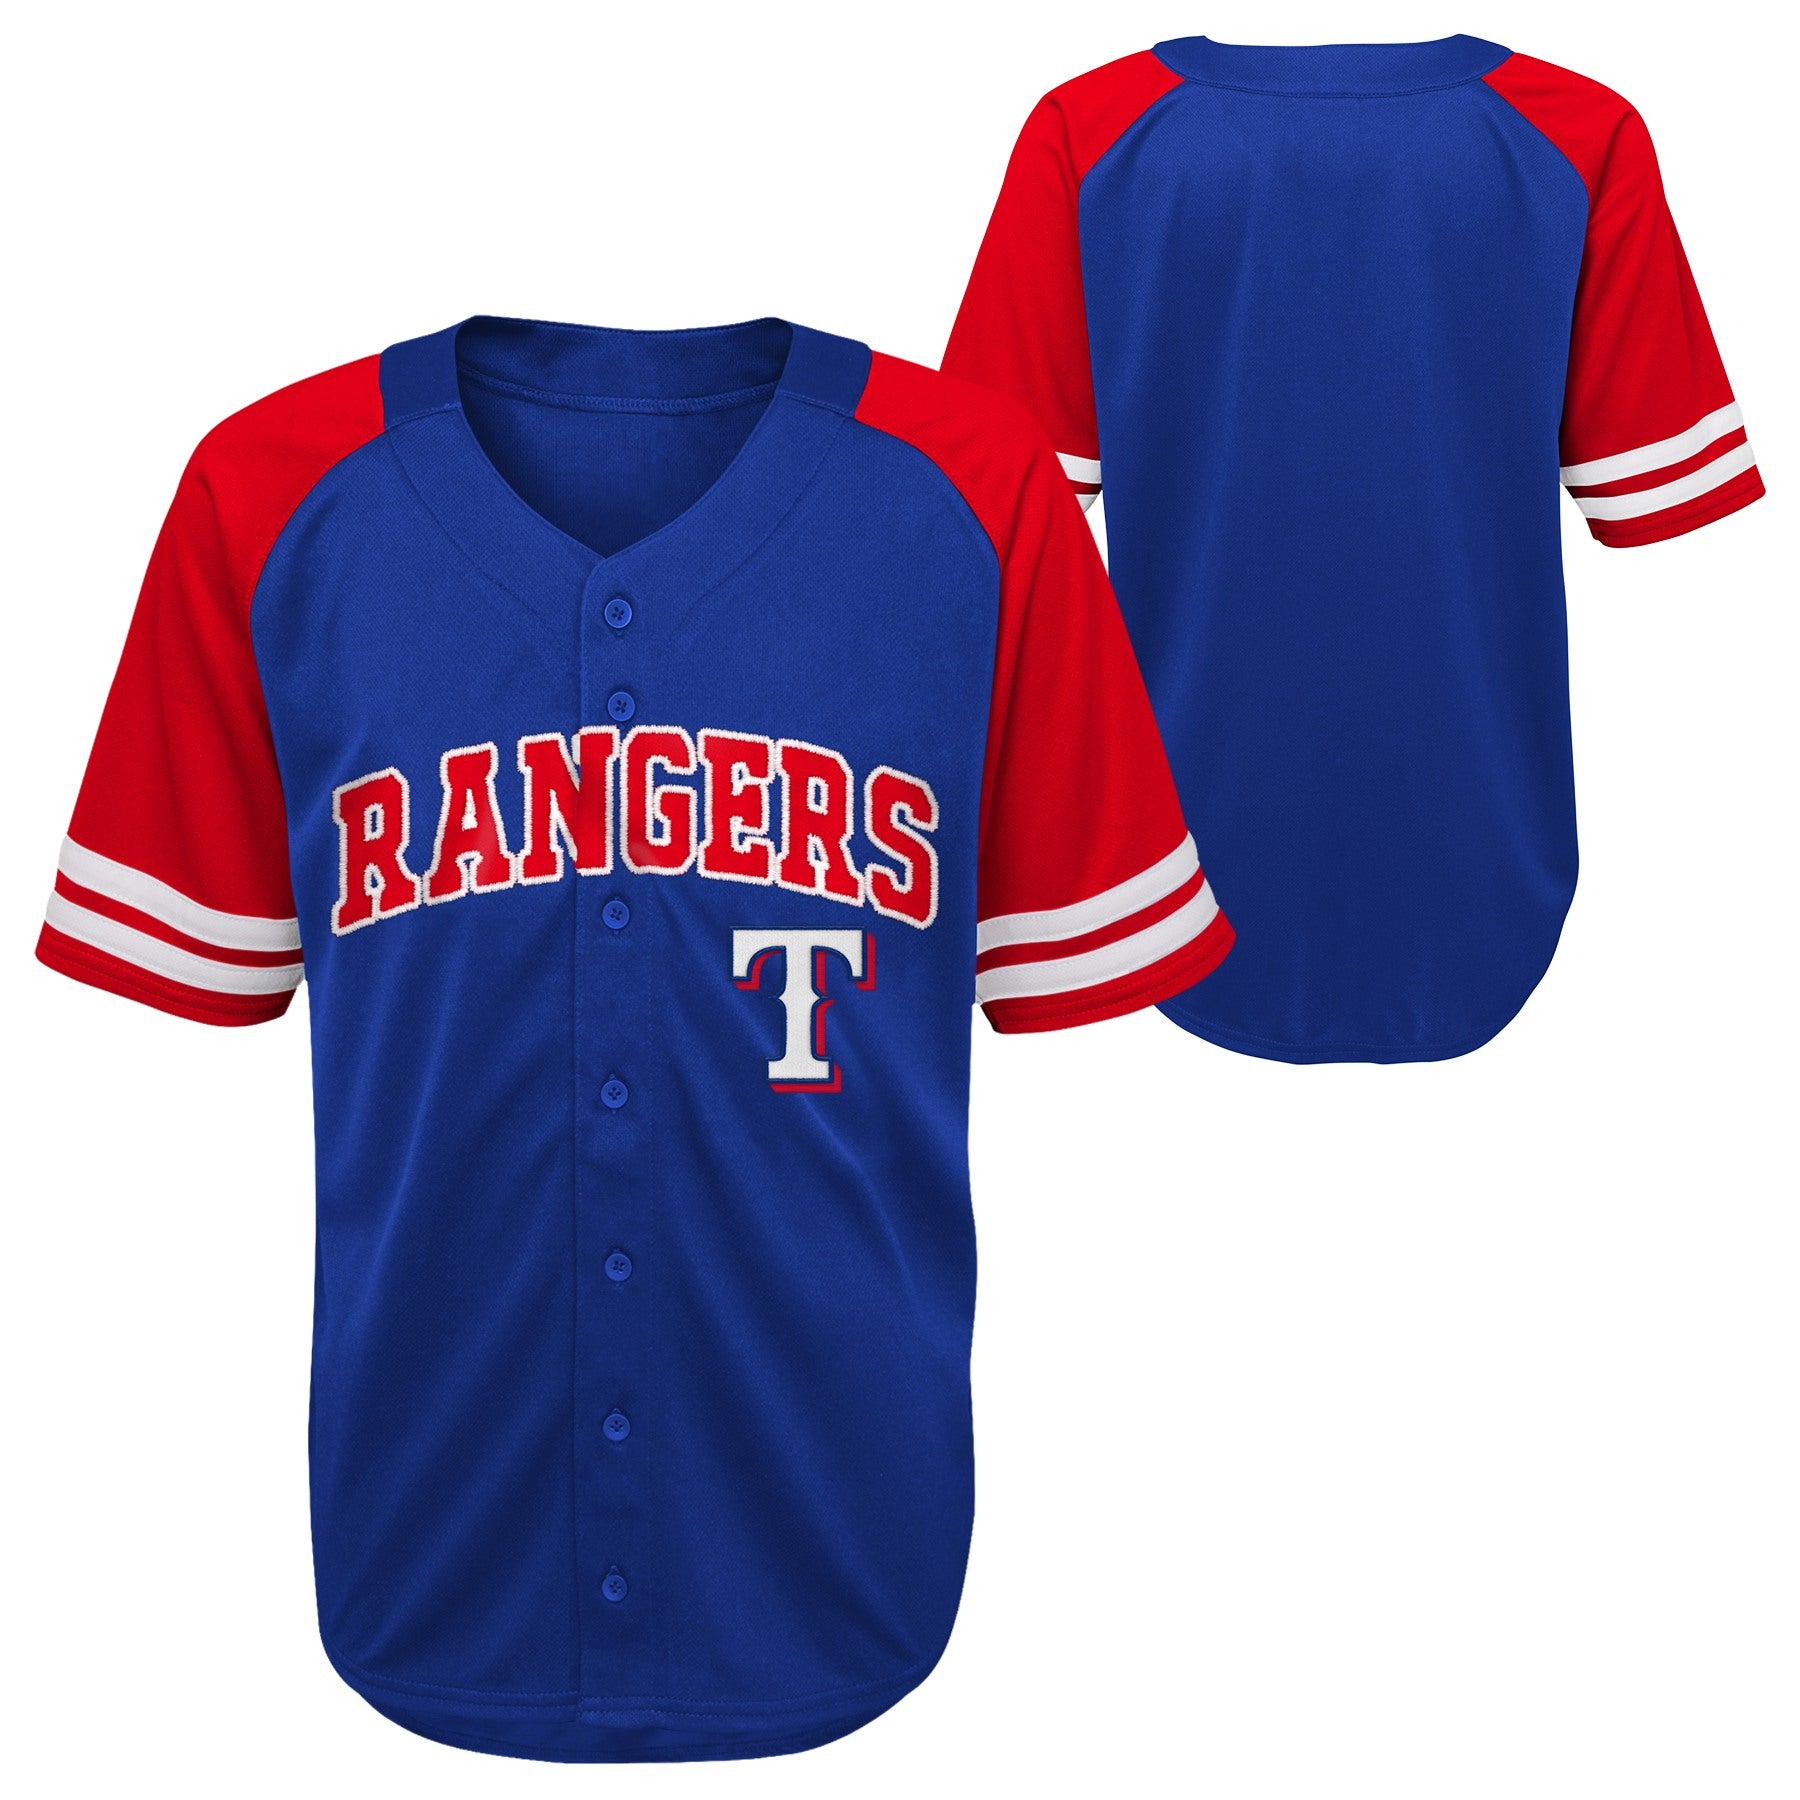 Texas Rangers Kids Jersey